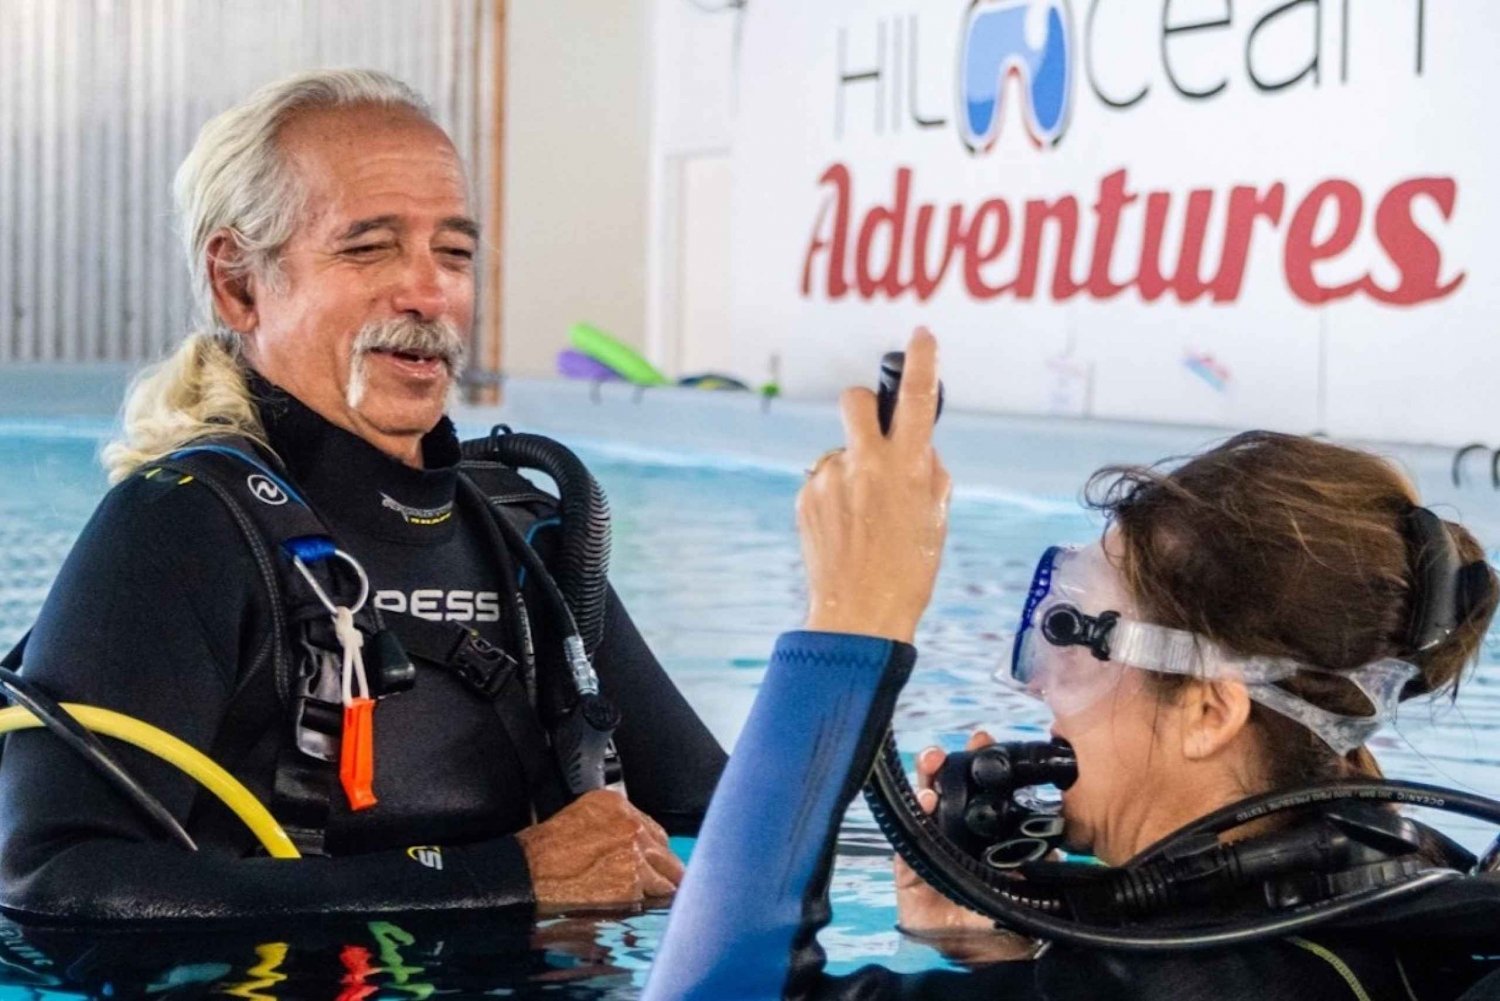 Hilo : Cours de remise à niveau en plongée sous-marine